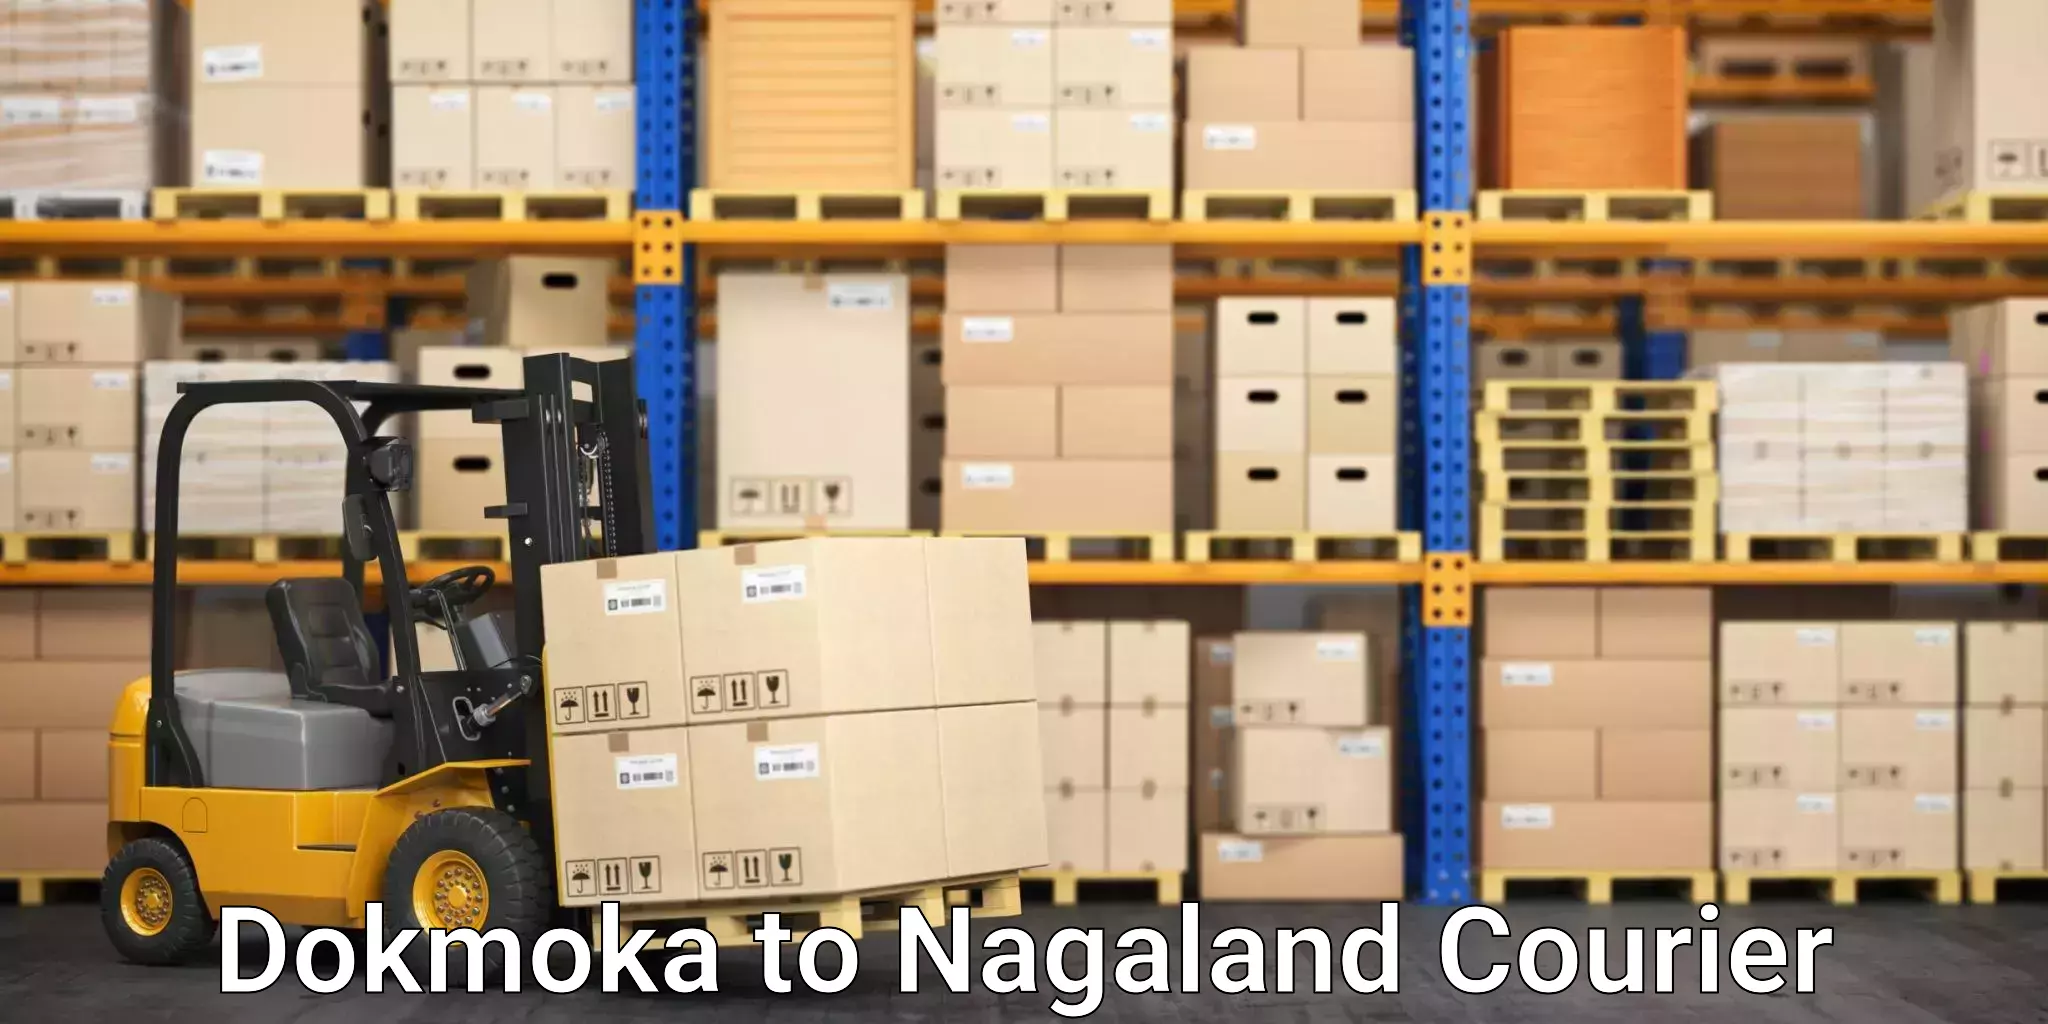 Global courier networks Dokmoka to NIT Nagaland